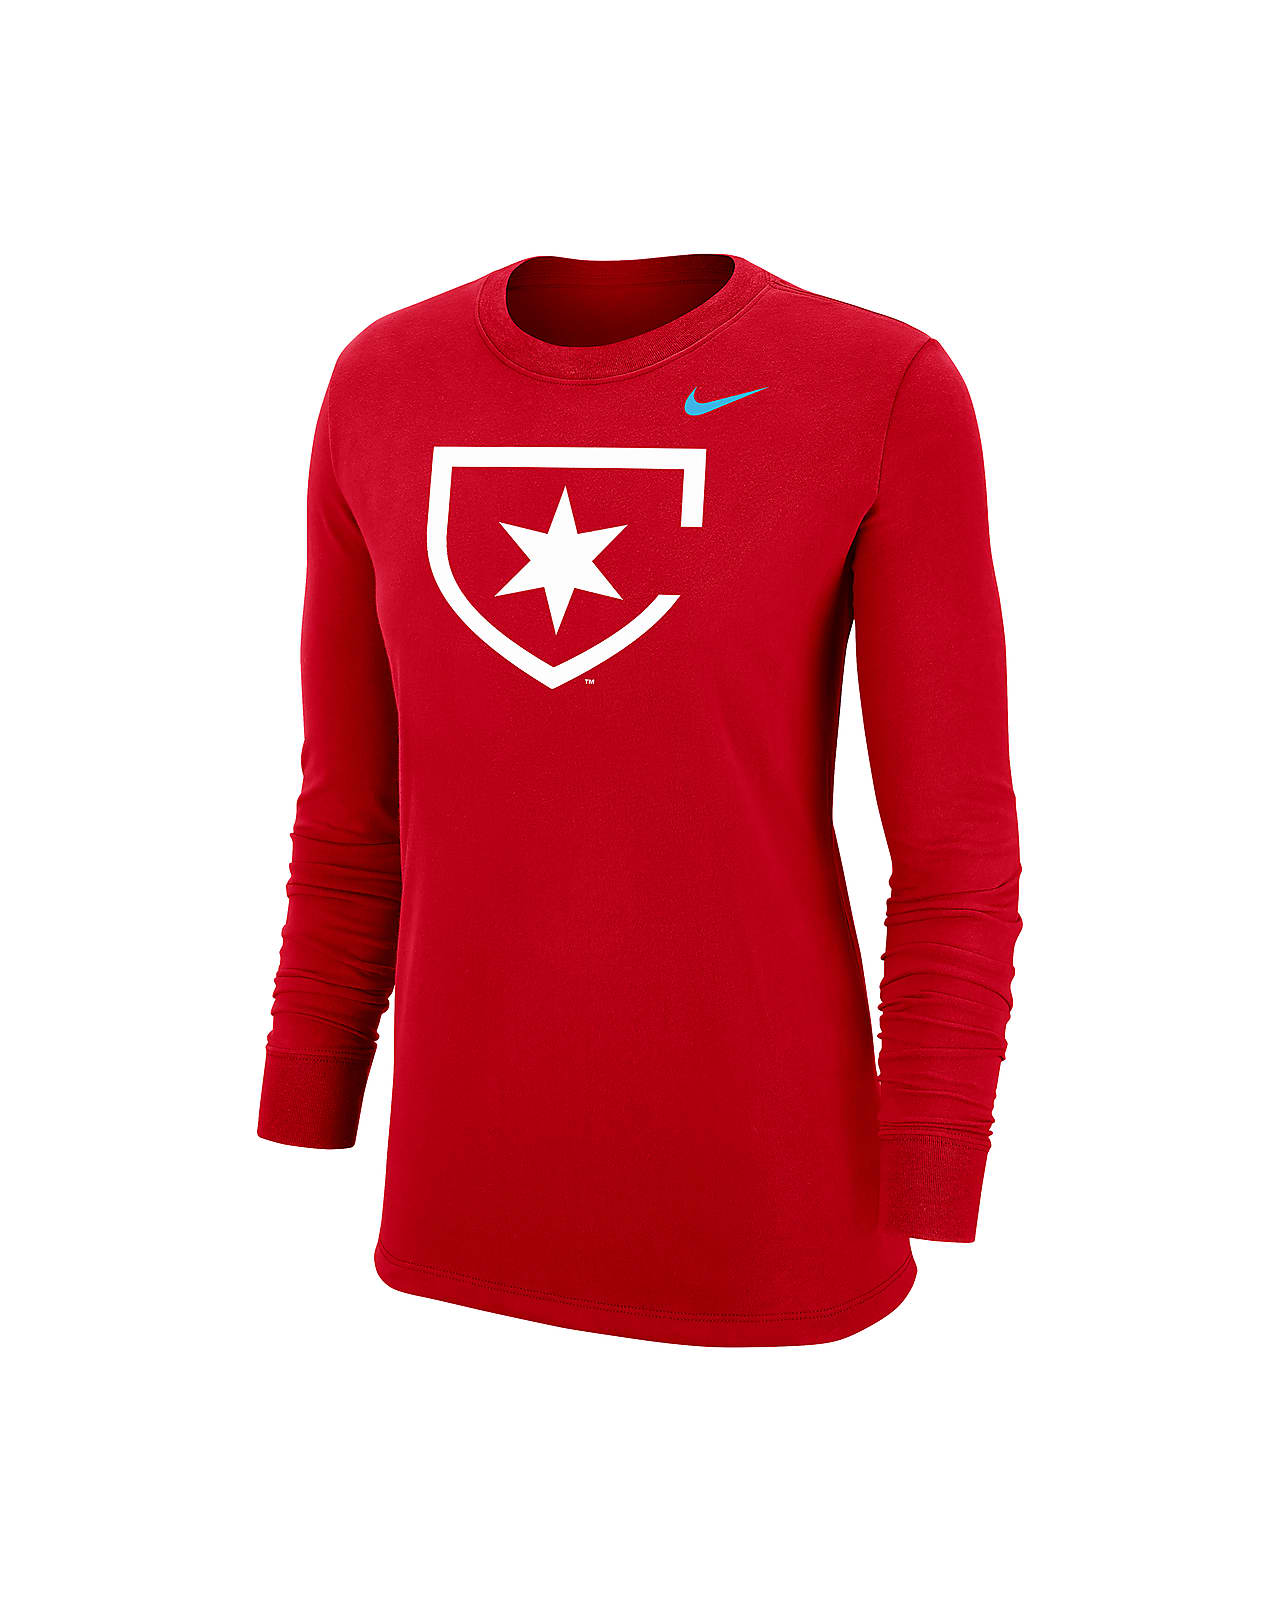 Chicago Red Stars Women's Nike Soccer Long-Sleeve T-Shirt